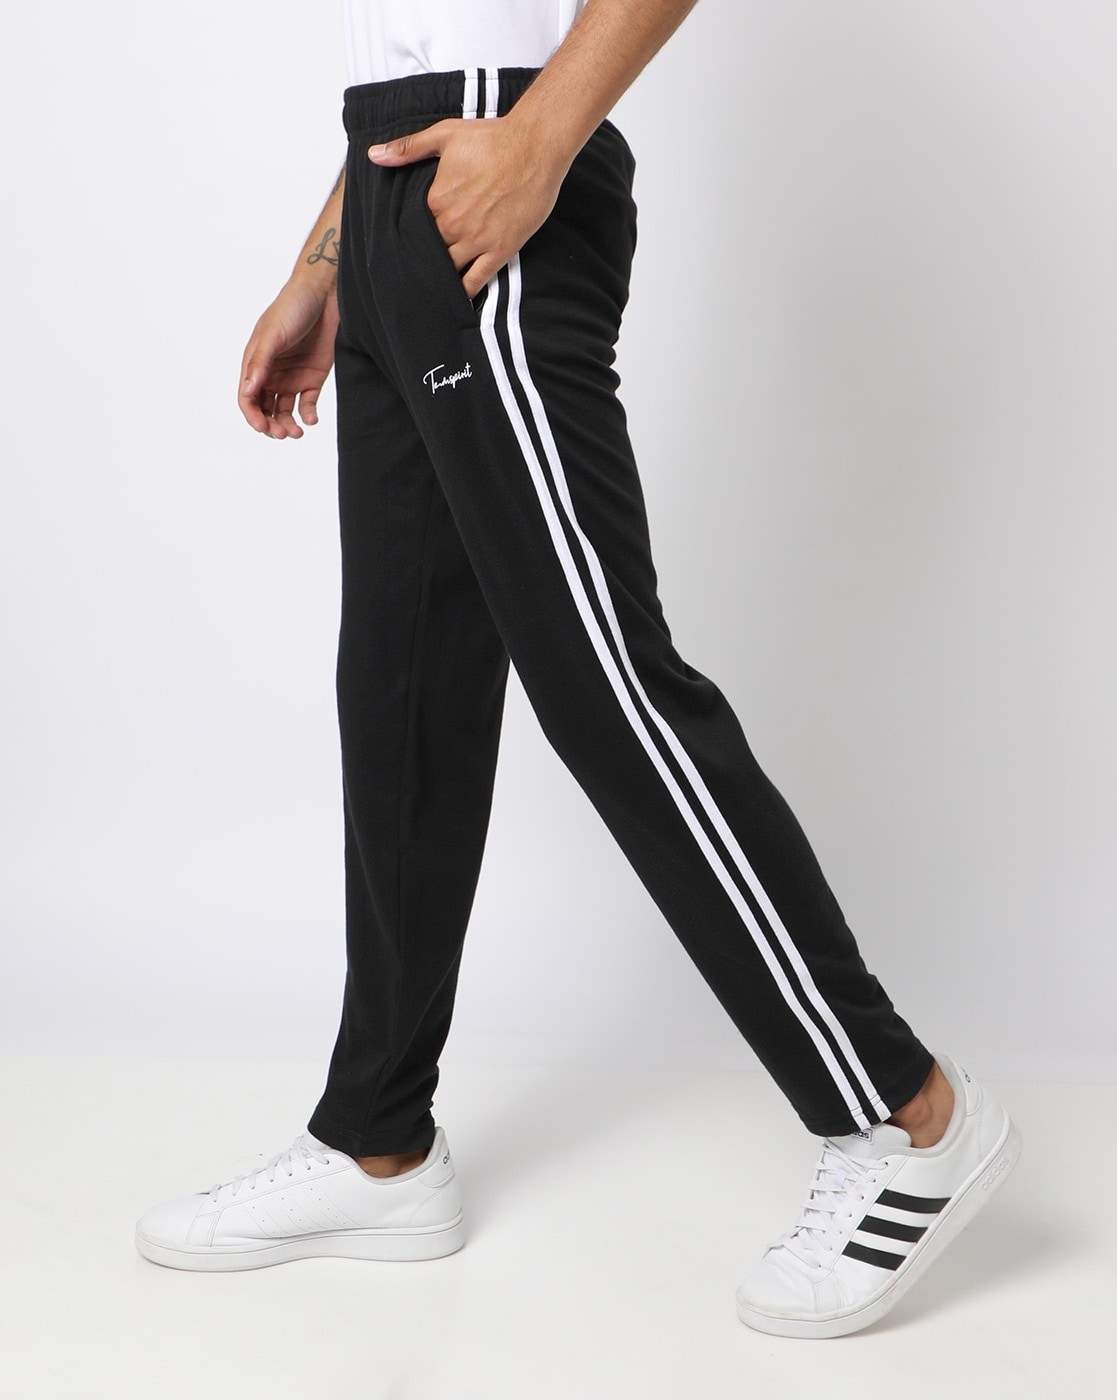 Track Pants For Men: गर्मी में कम्फर्ट के बाप हैं ये ट्रैक पैंट, रनिंग से  लेकर वर्कआउट तक के लिए हैं बेस्ट | track pants for men are best in comfort  and